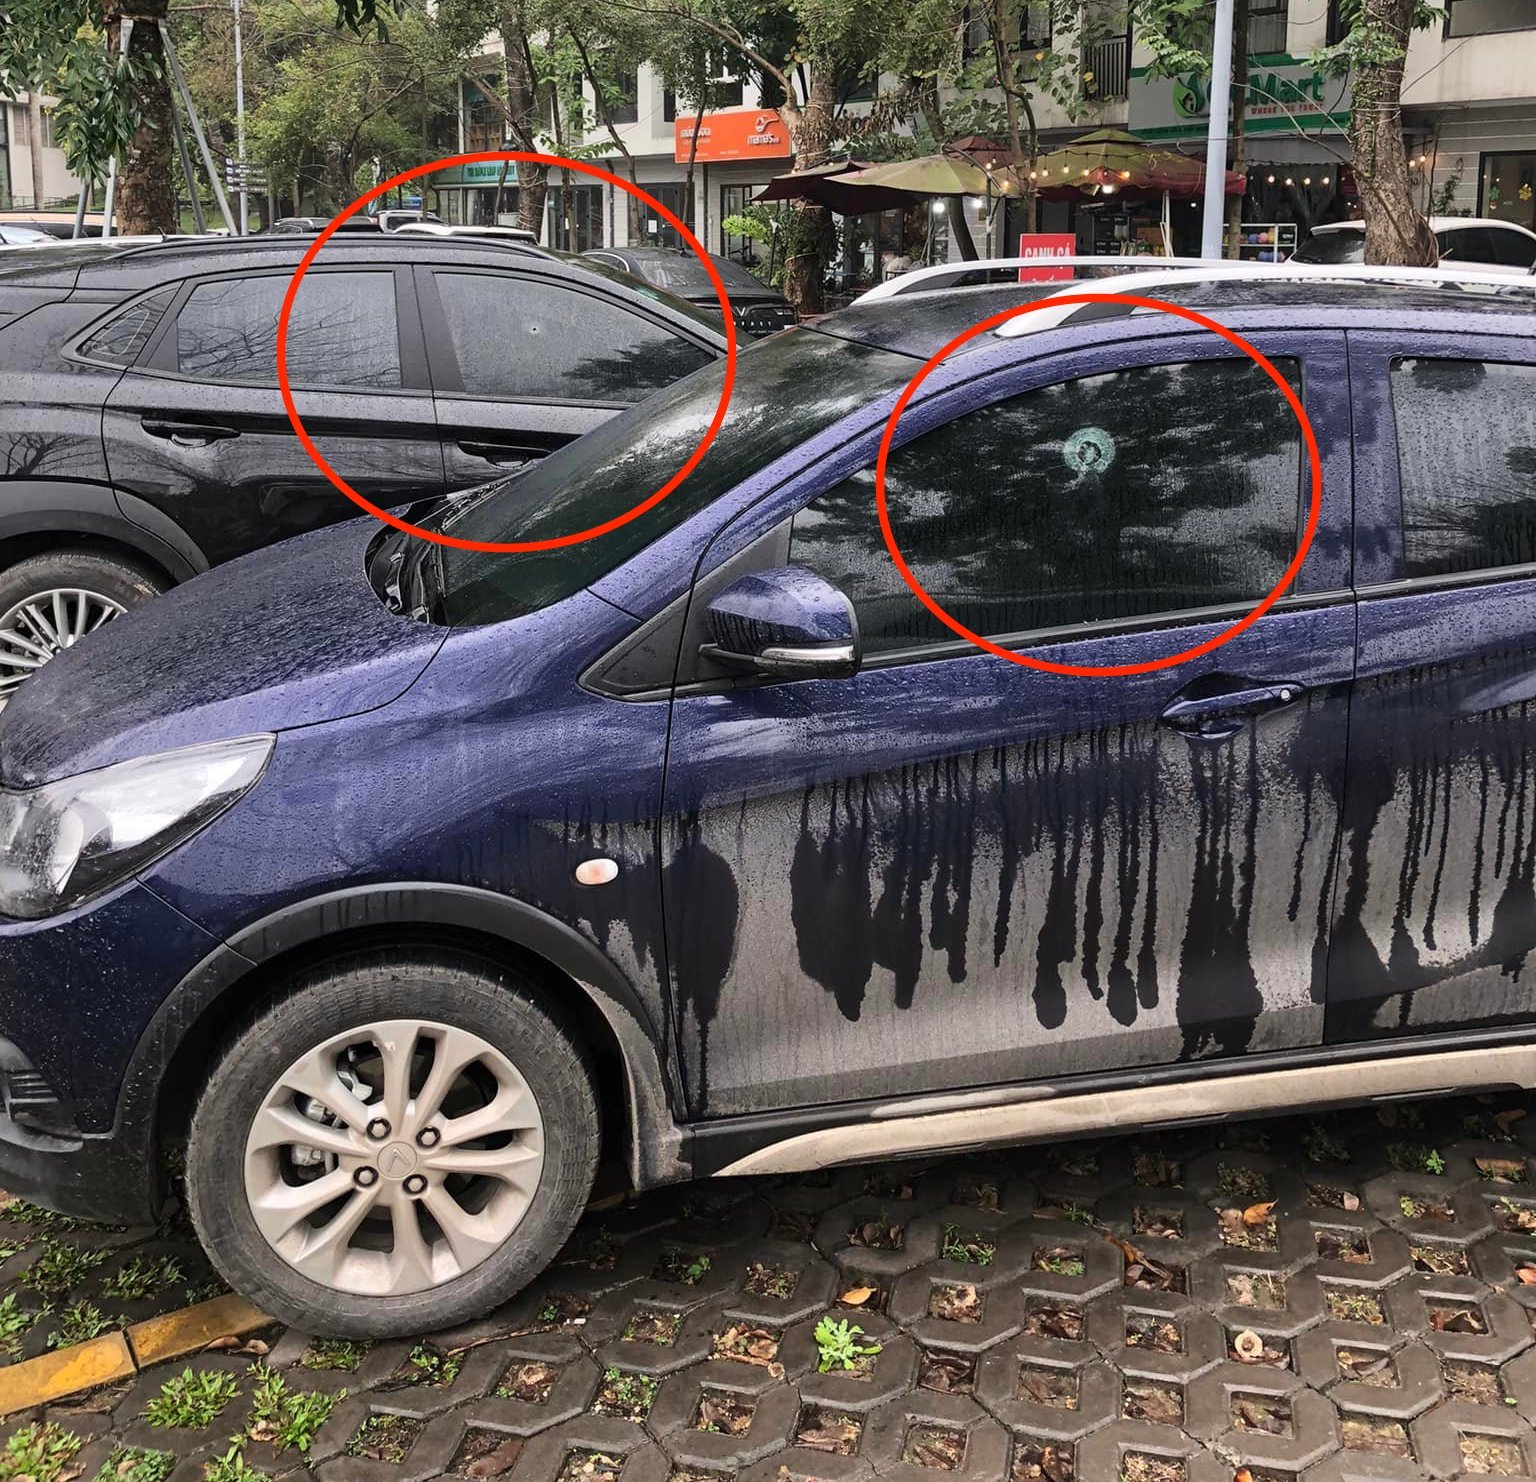 Hưng Yên: Hàng loạt ô tô trong một khu dân cư bị bắn vỡ kính